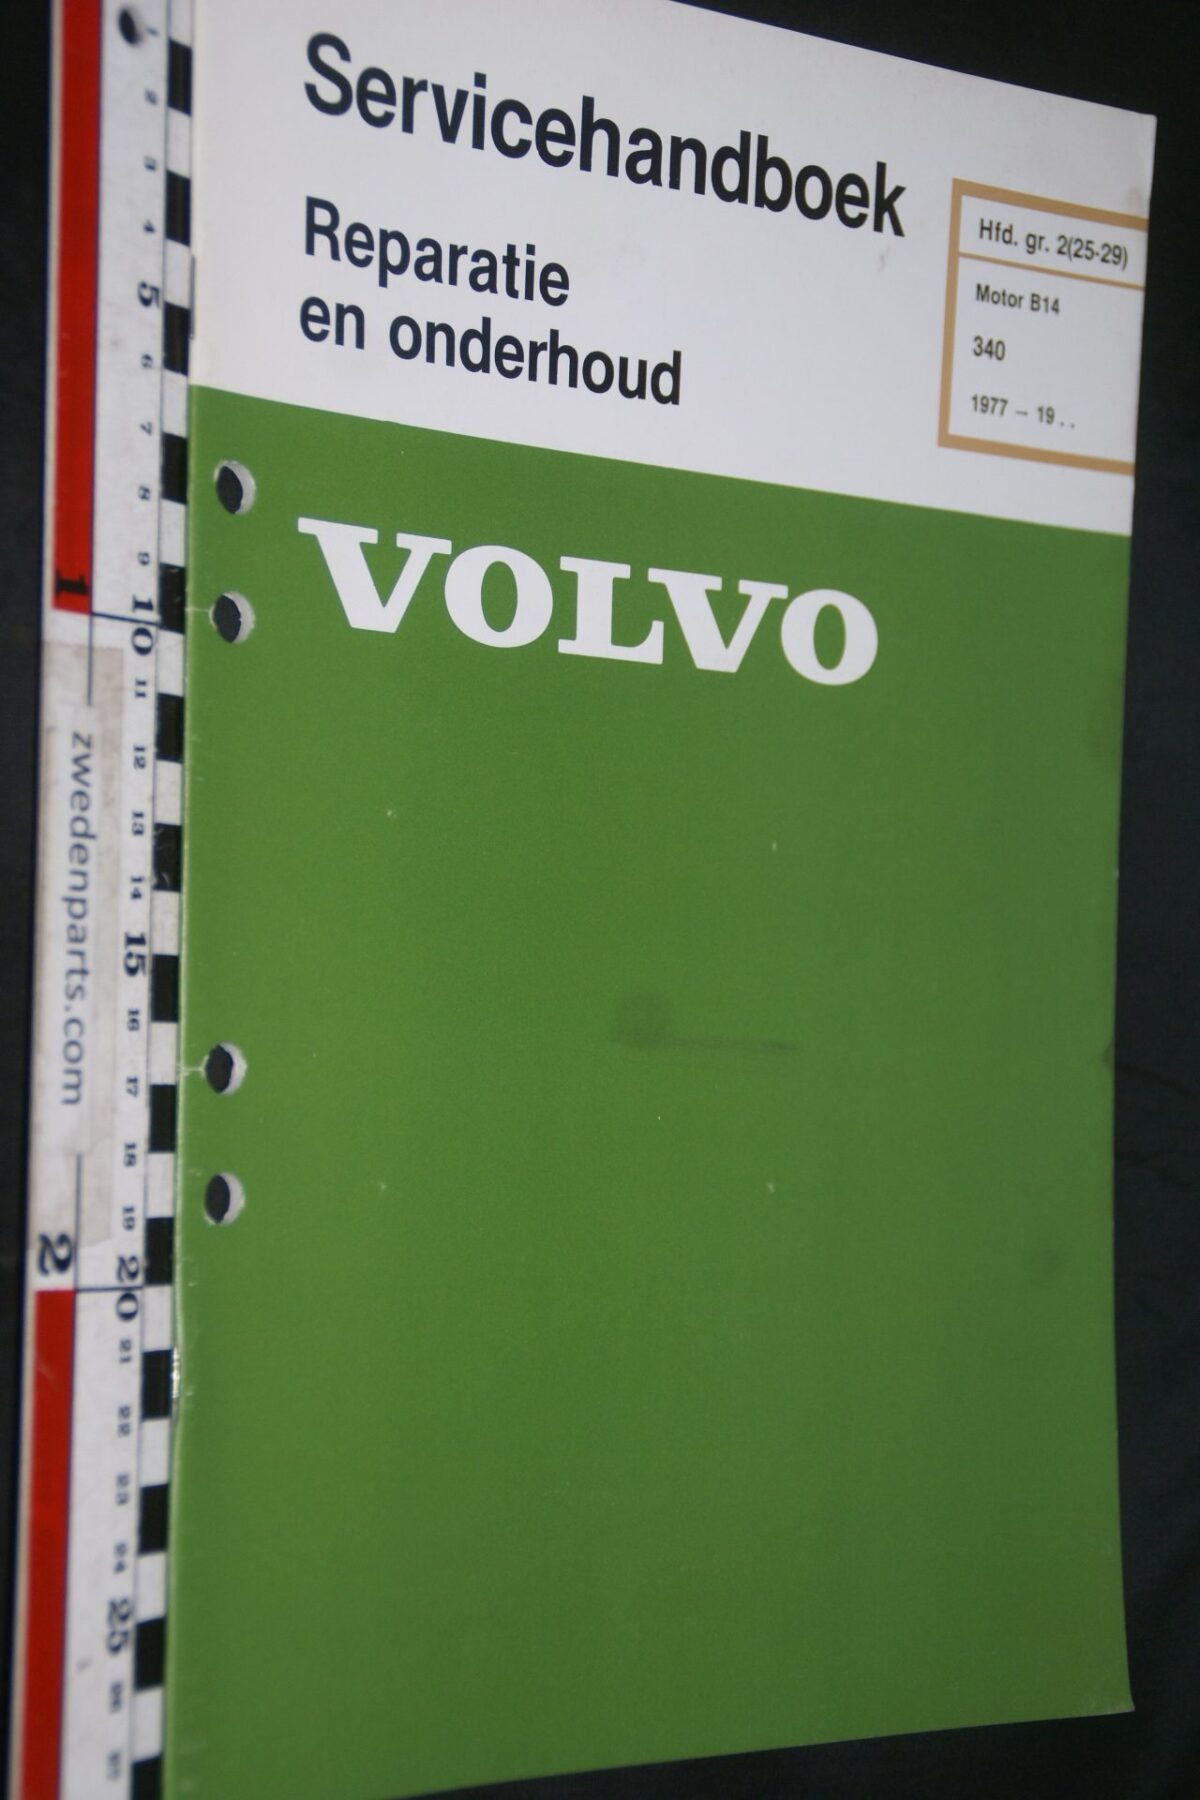 DSC07225 1979 origineel Volvo 340 servicehandboek  2(25-29) motor B14 1 van 800 TP 35005-1